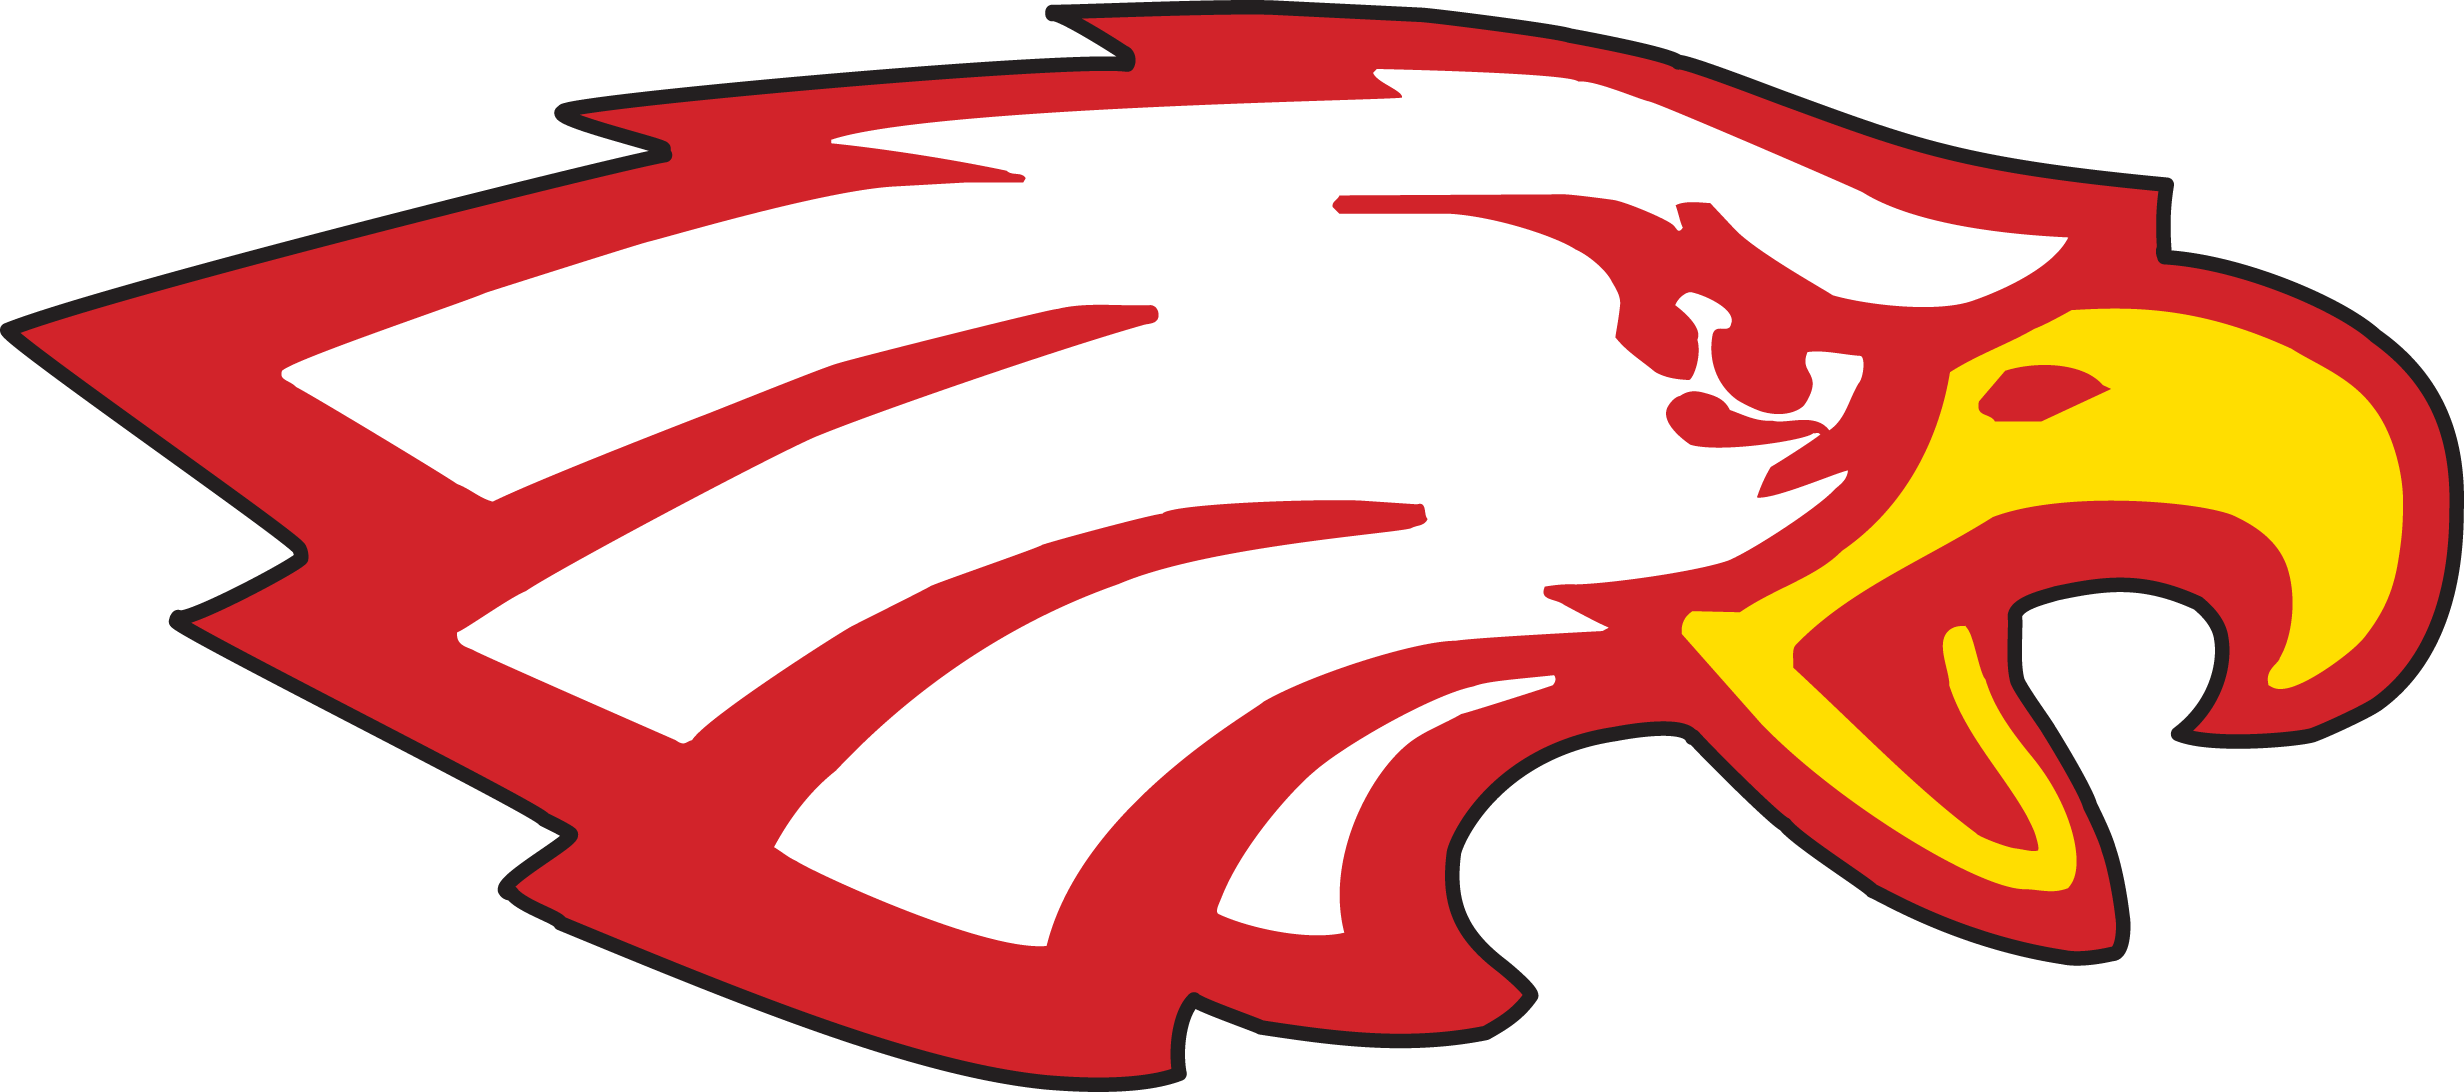 High School Mascots - Eastern High School Eagles (2464x1092)